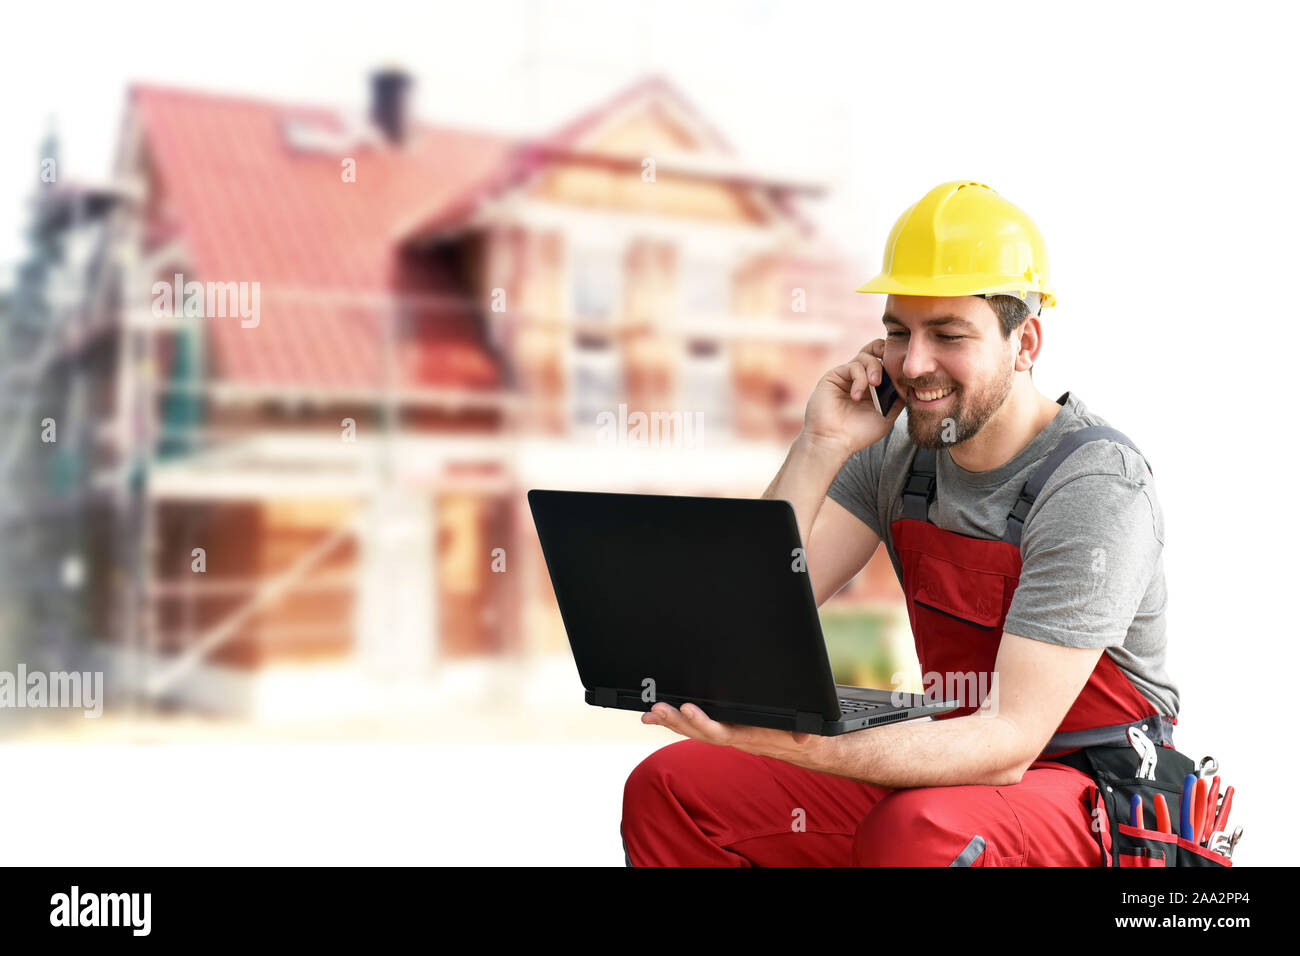 Customer service com Handwerker - Arbeitnehmer mit Telefon und Notebook auf der Baustelle Stockfoto